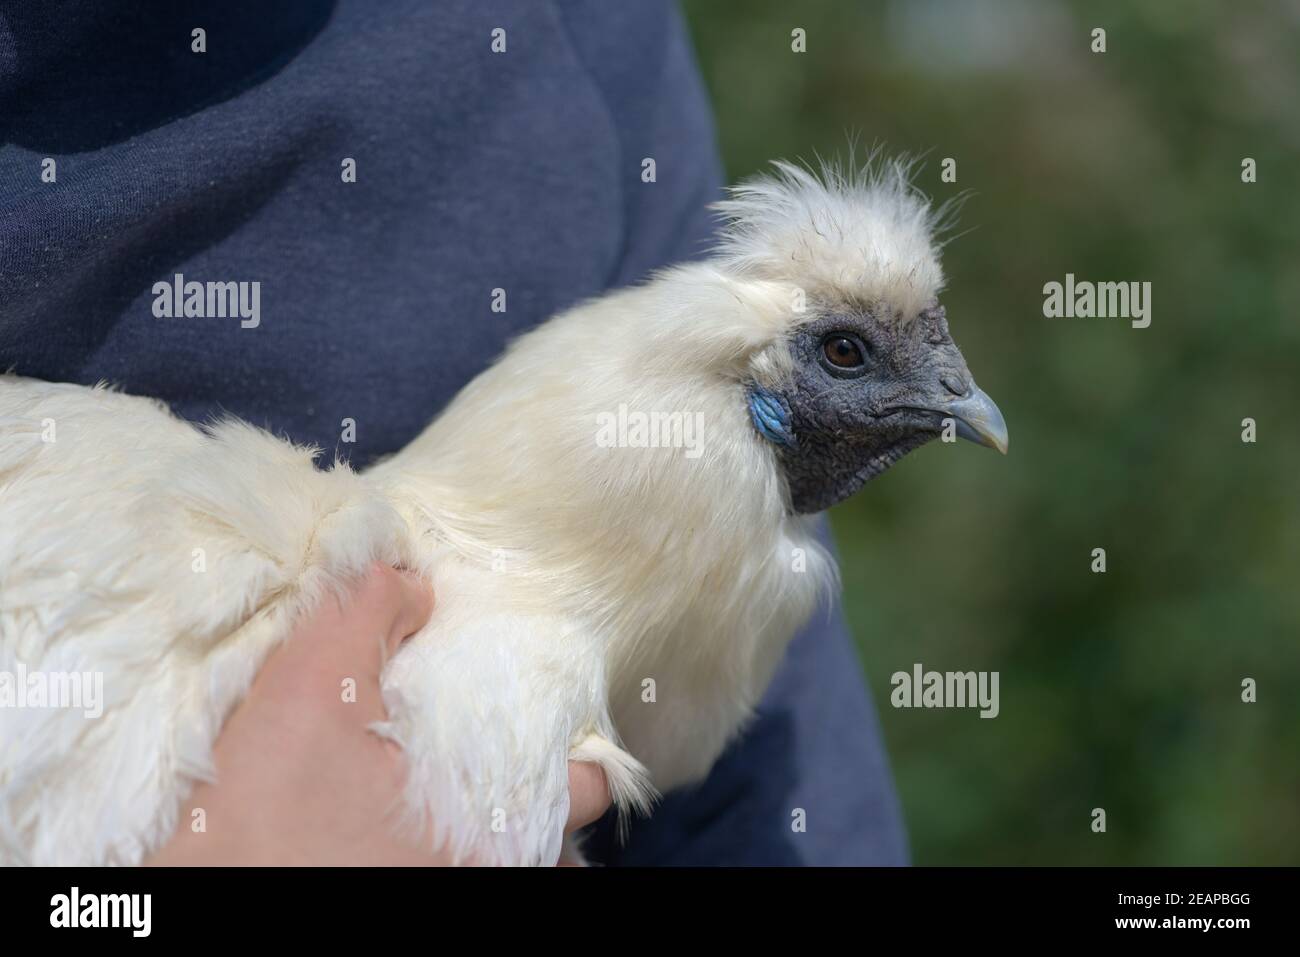 Imagen más suave de un pollo blanco silkie que se sostiene, se centran en las plumas Foto de stock